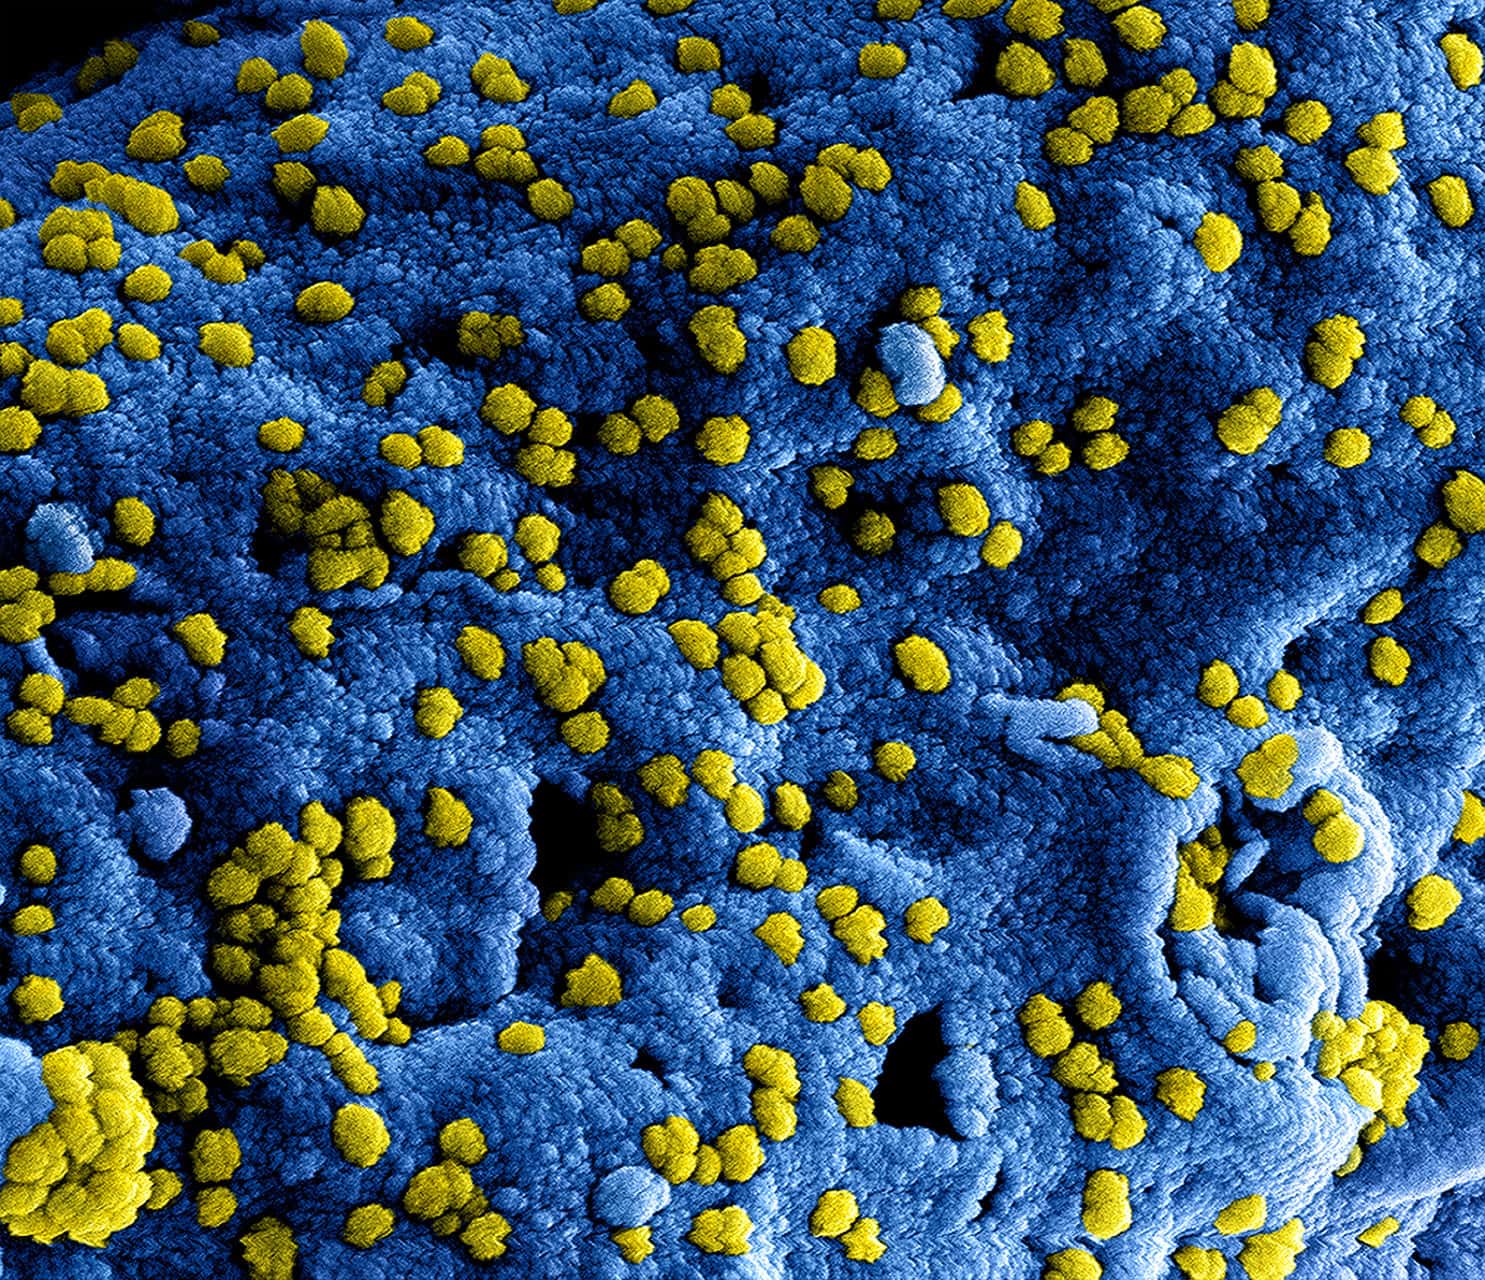 MERS-virus waarschijnlijk geen wereldwijde epidemie - New Scientist2048 x 1765